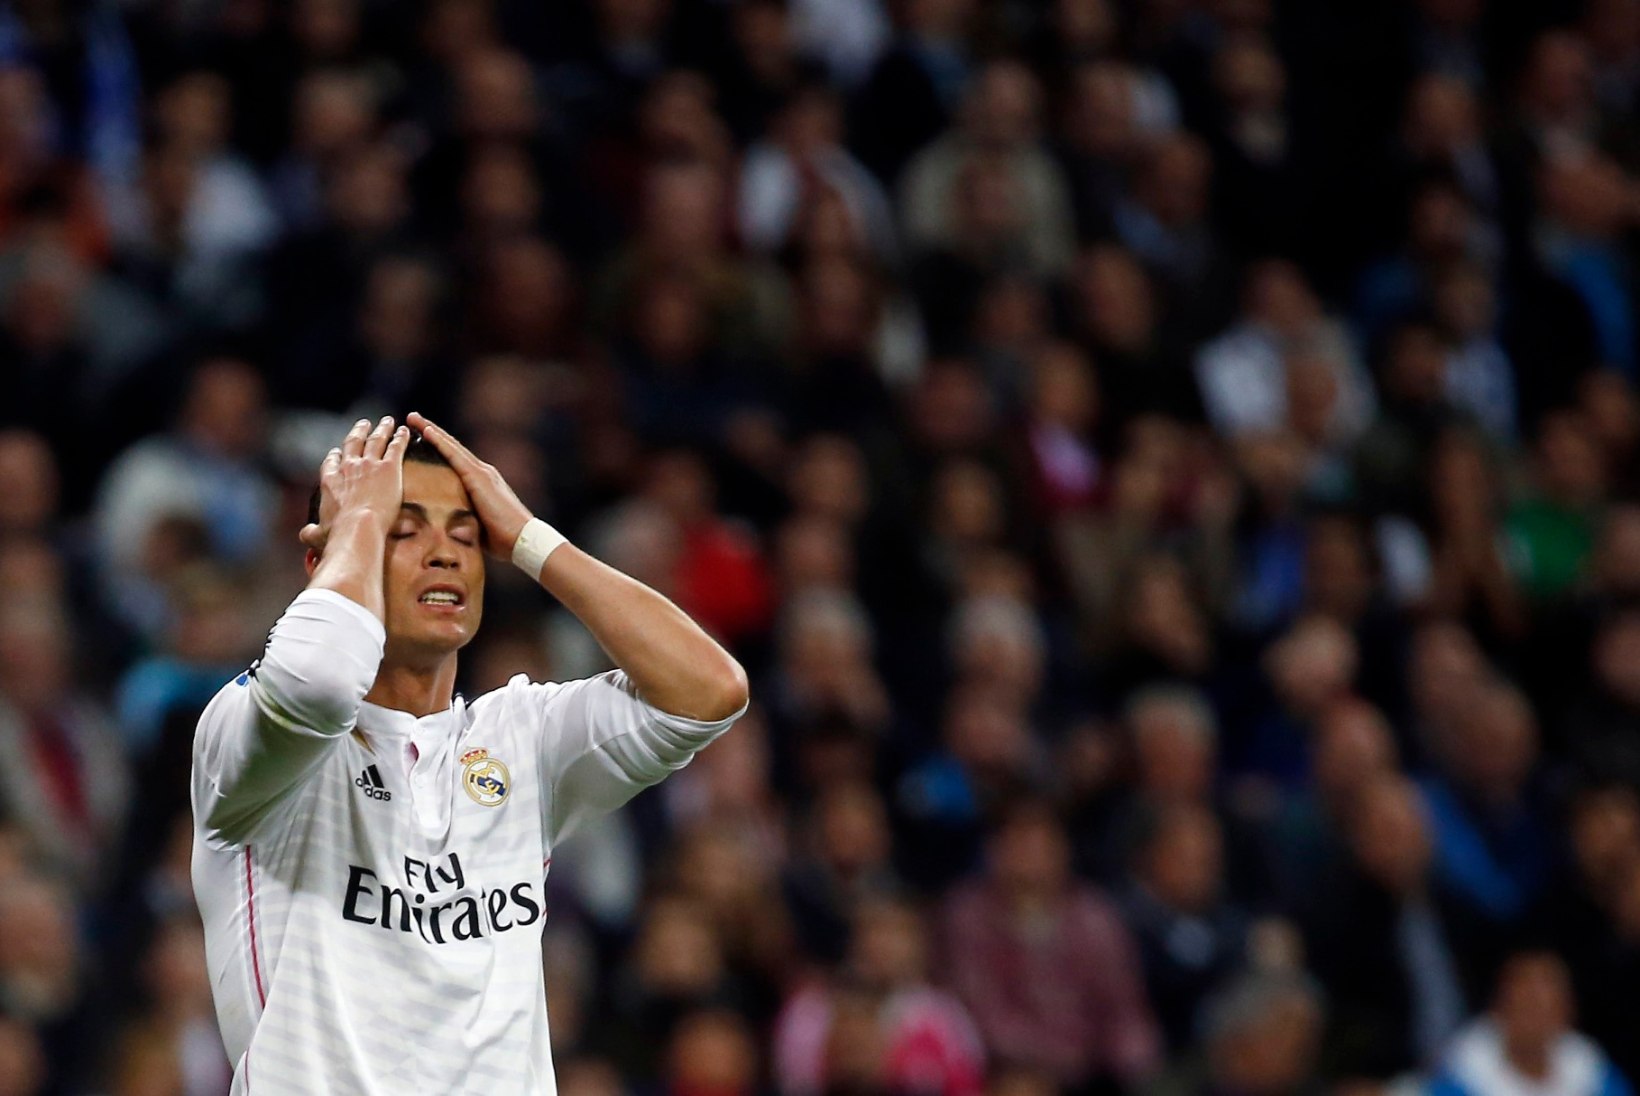 GALERII: Madridi Real jäi nulli peale ja kaotas tabeli keskosa klubile!